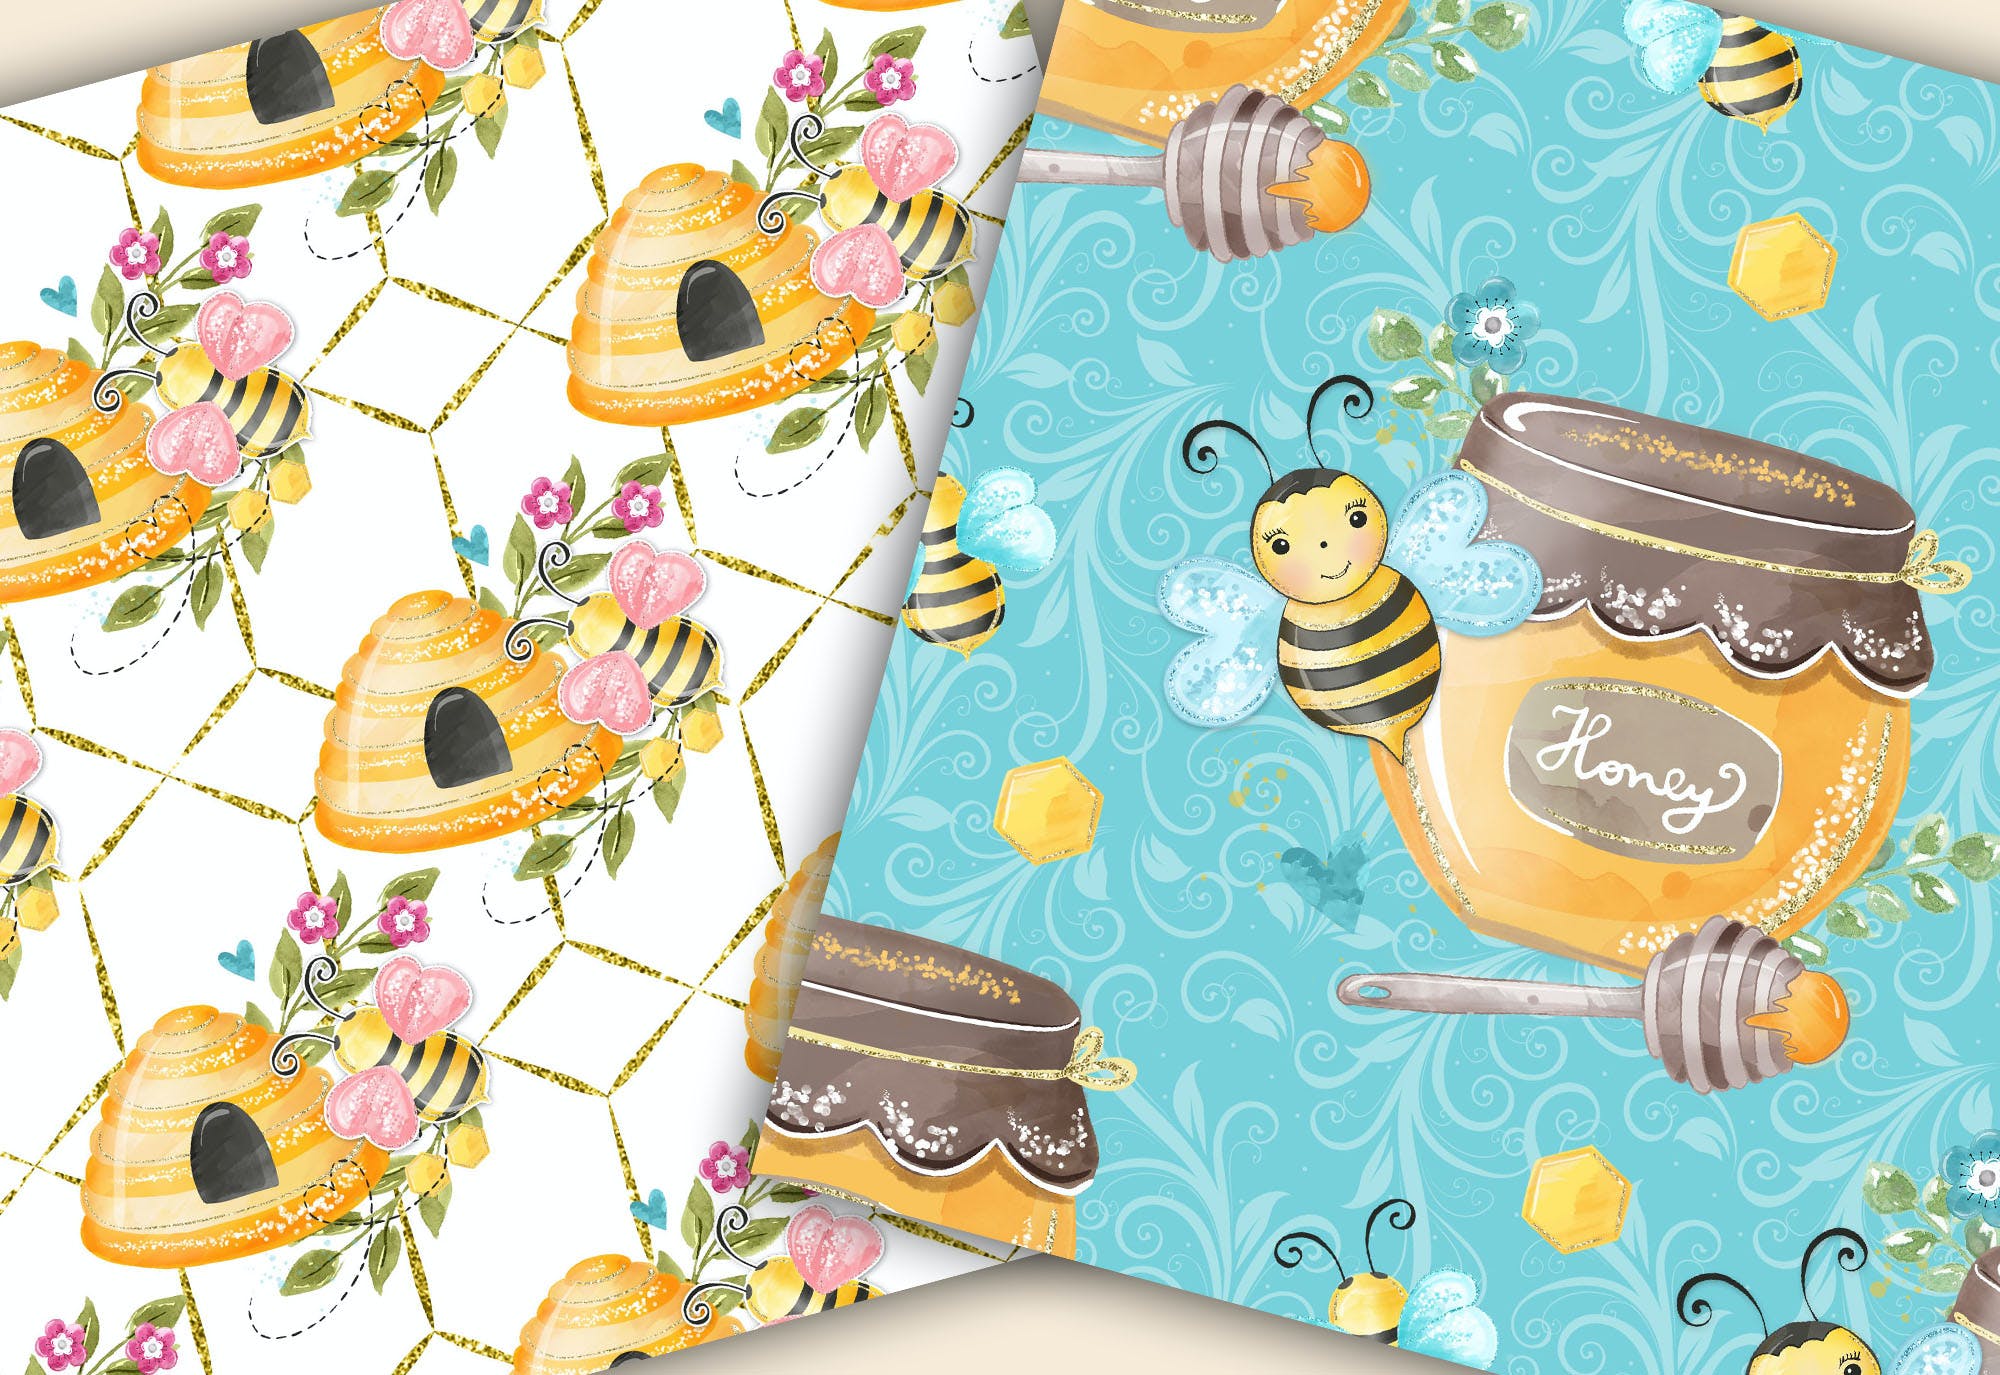 水彩数码纸大黄蜂图案设计素材 Bumble Bee digital paper pack设计素材模板